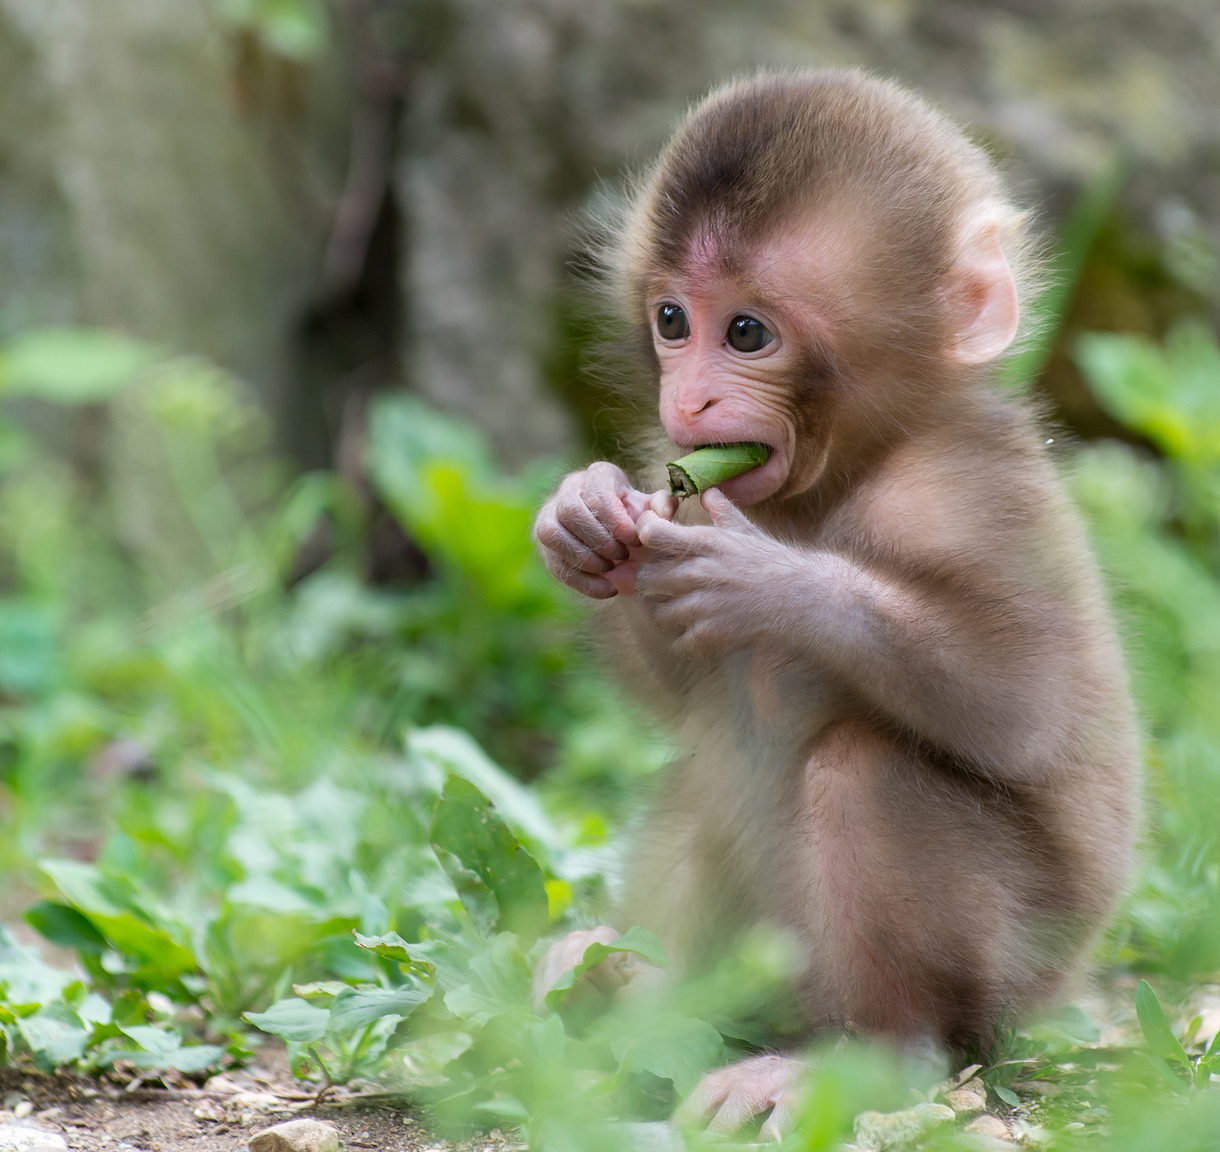 Hãy xem hình ảnh con khỉ dễ thương đang cười toe toét, chơi đùa hay ăn những quả chuối tươi ngon, chắc chắn bạn sẽ không thể rời mắt.